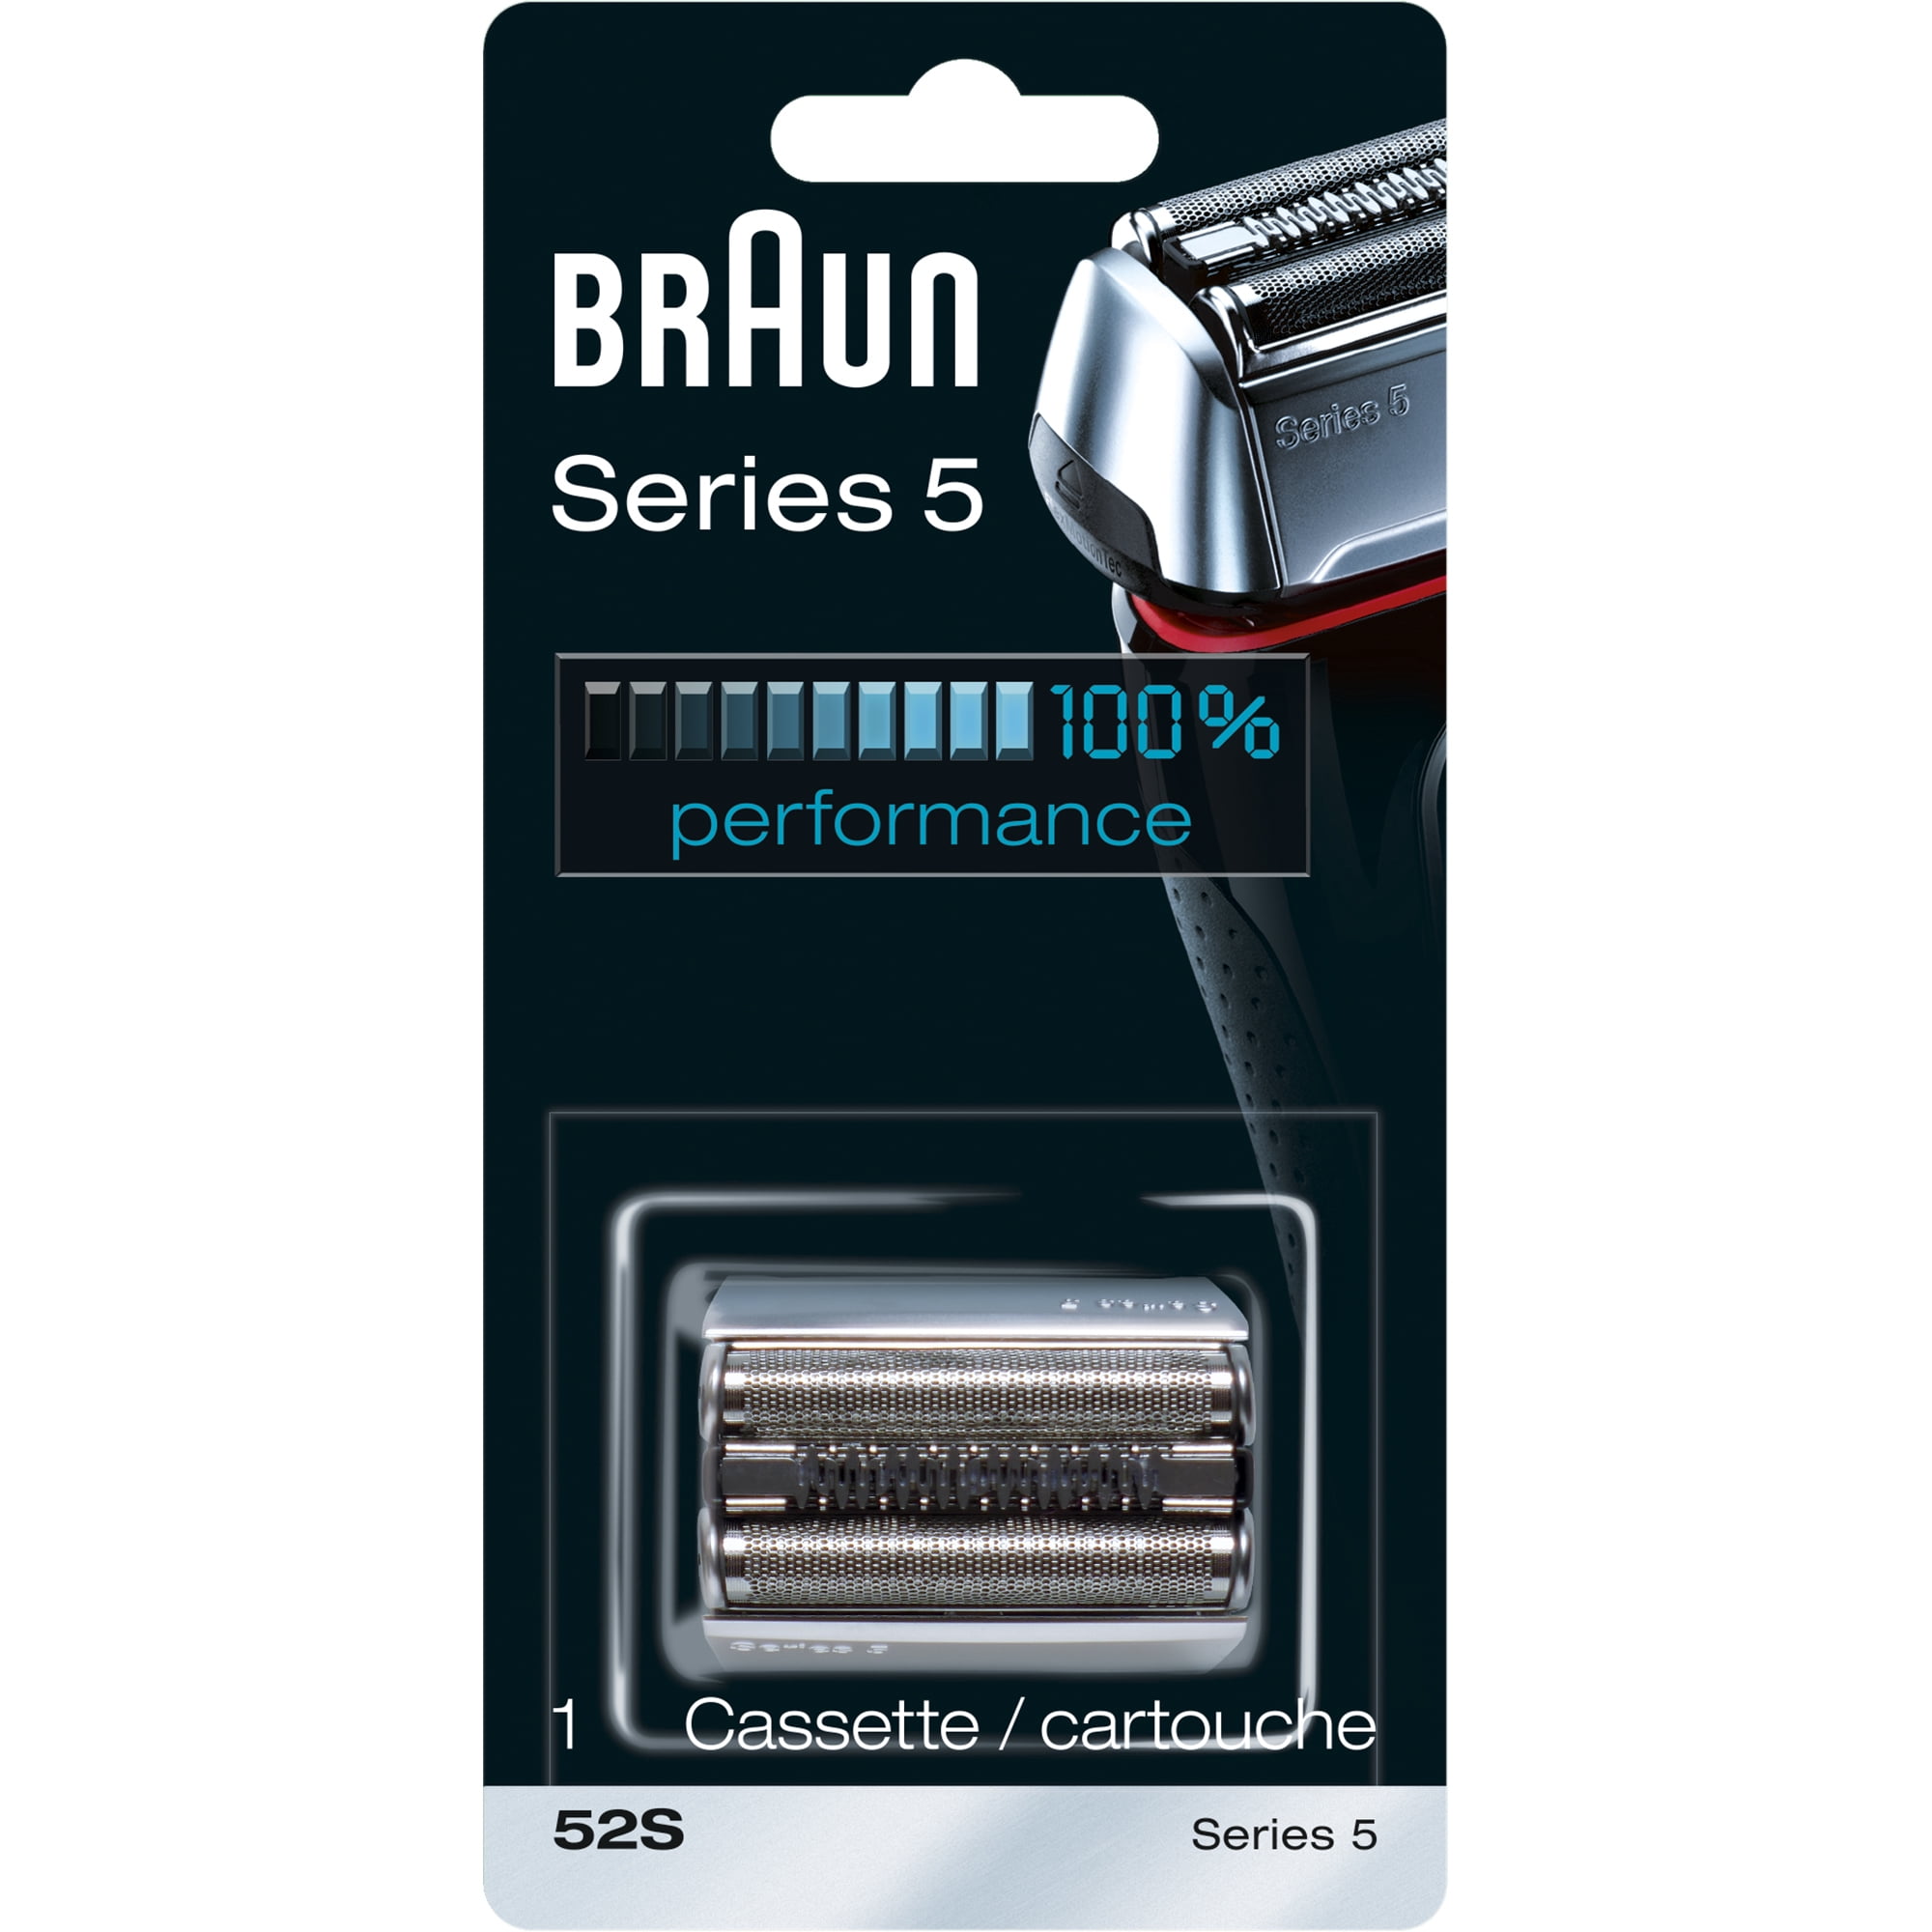 Купить сетку для браун 5. Сетка + режущий блок Braun 52s. Браун 52b сетка для бритвы. Сменная сетка для бритвы Braun series5 52s. Сетка+блок Braun Series 5 52s.